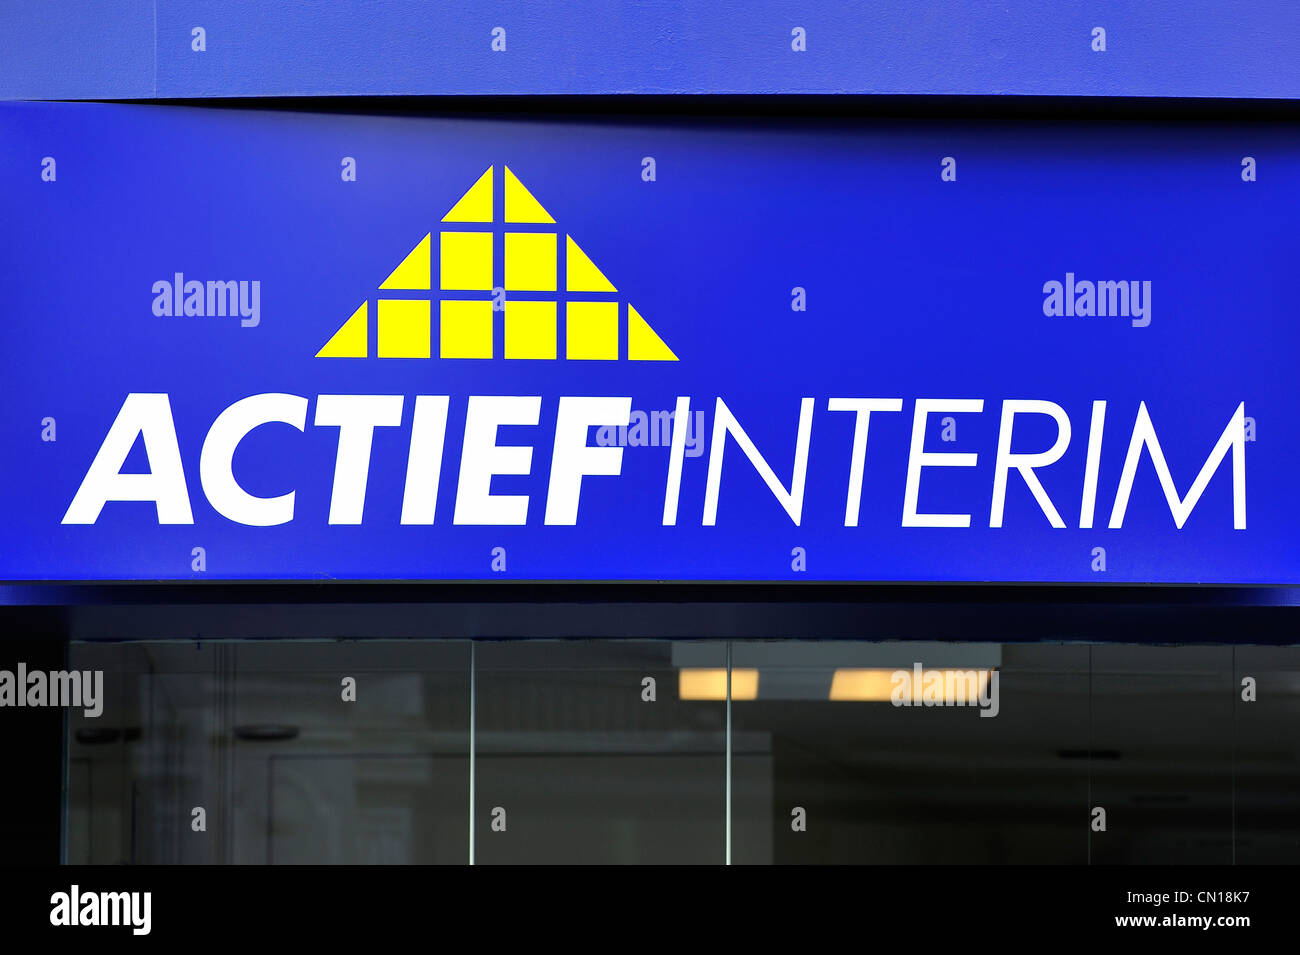 Pancarte avec logo pour agence intérim Actief Interim, Flandre orientale, Belgique Banque D'Images